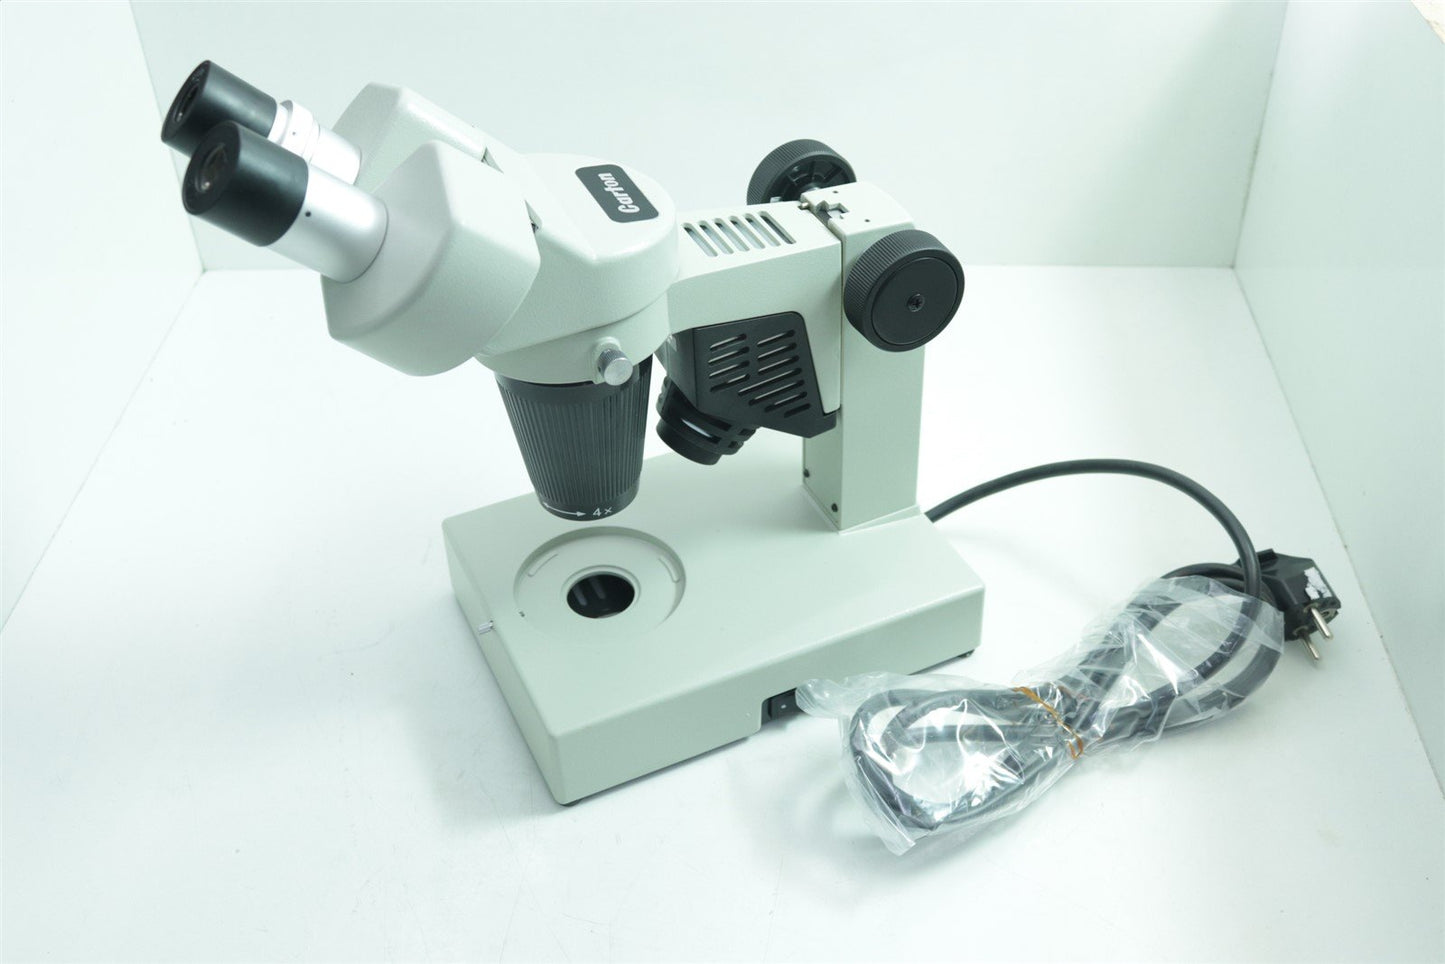 Carton SCW-E Binocular Fixed Magnification Microscope 2x 1x/2x 1x/3x or 2x/4x